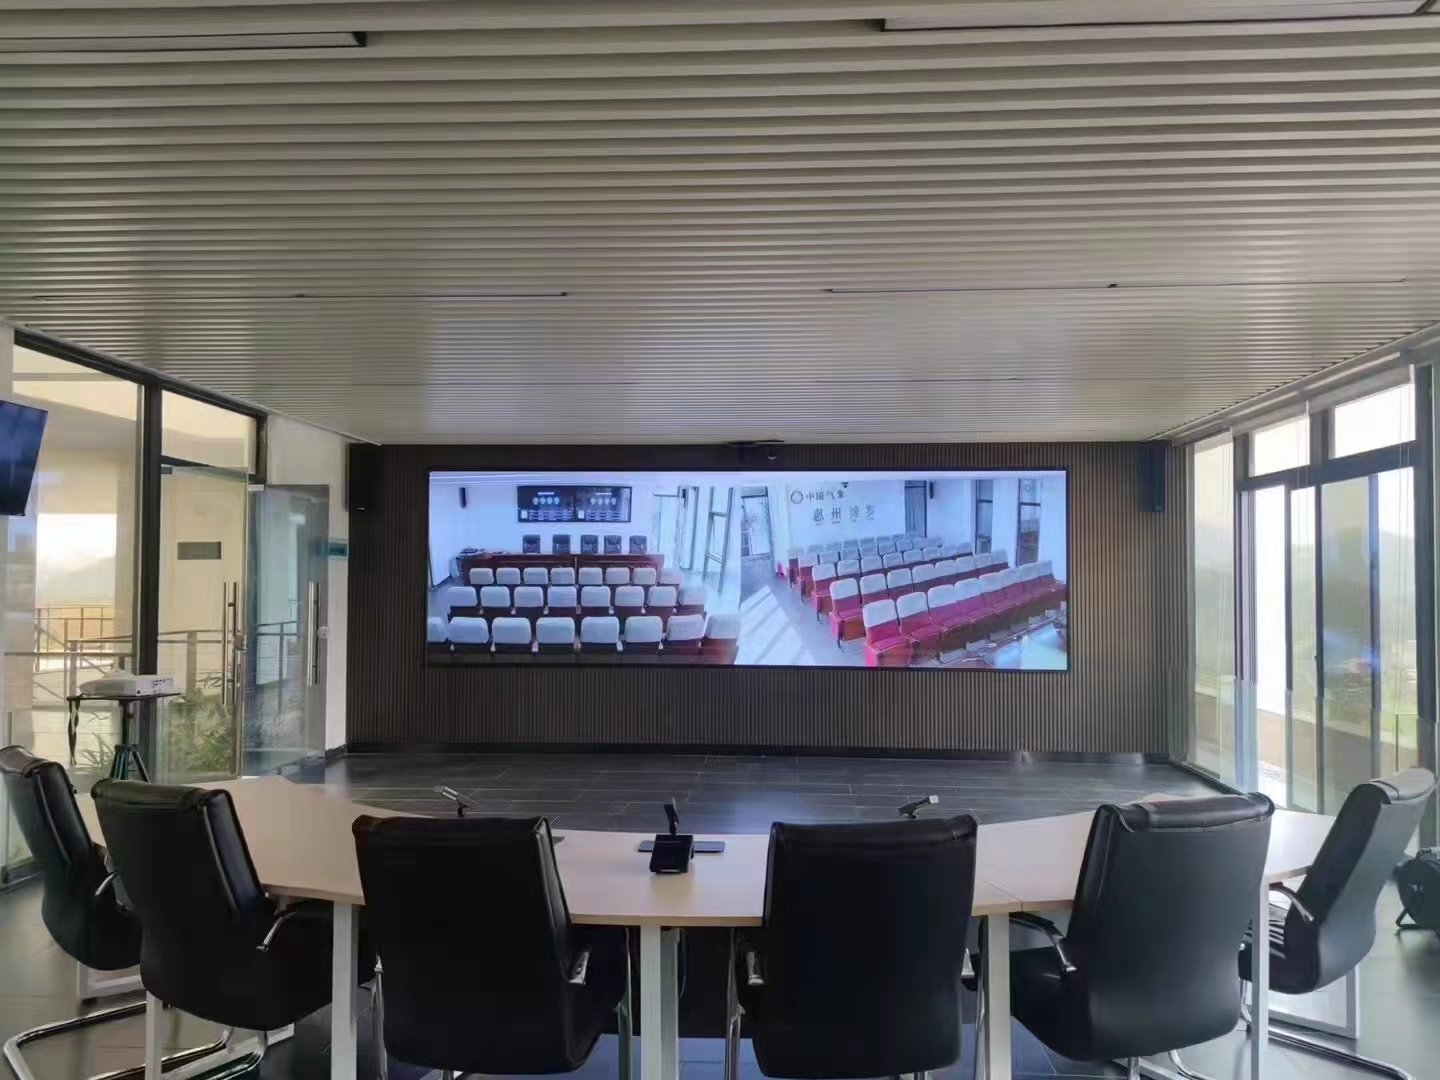 تصميم نظام مؤتمرات لقاعة مبنى المكاتب متعددة الوظائف